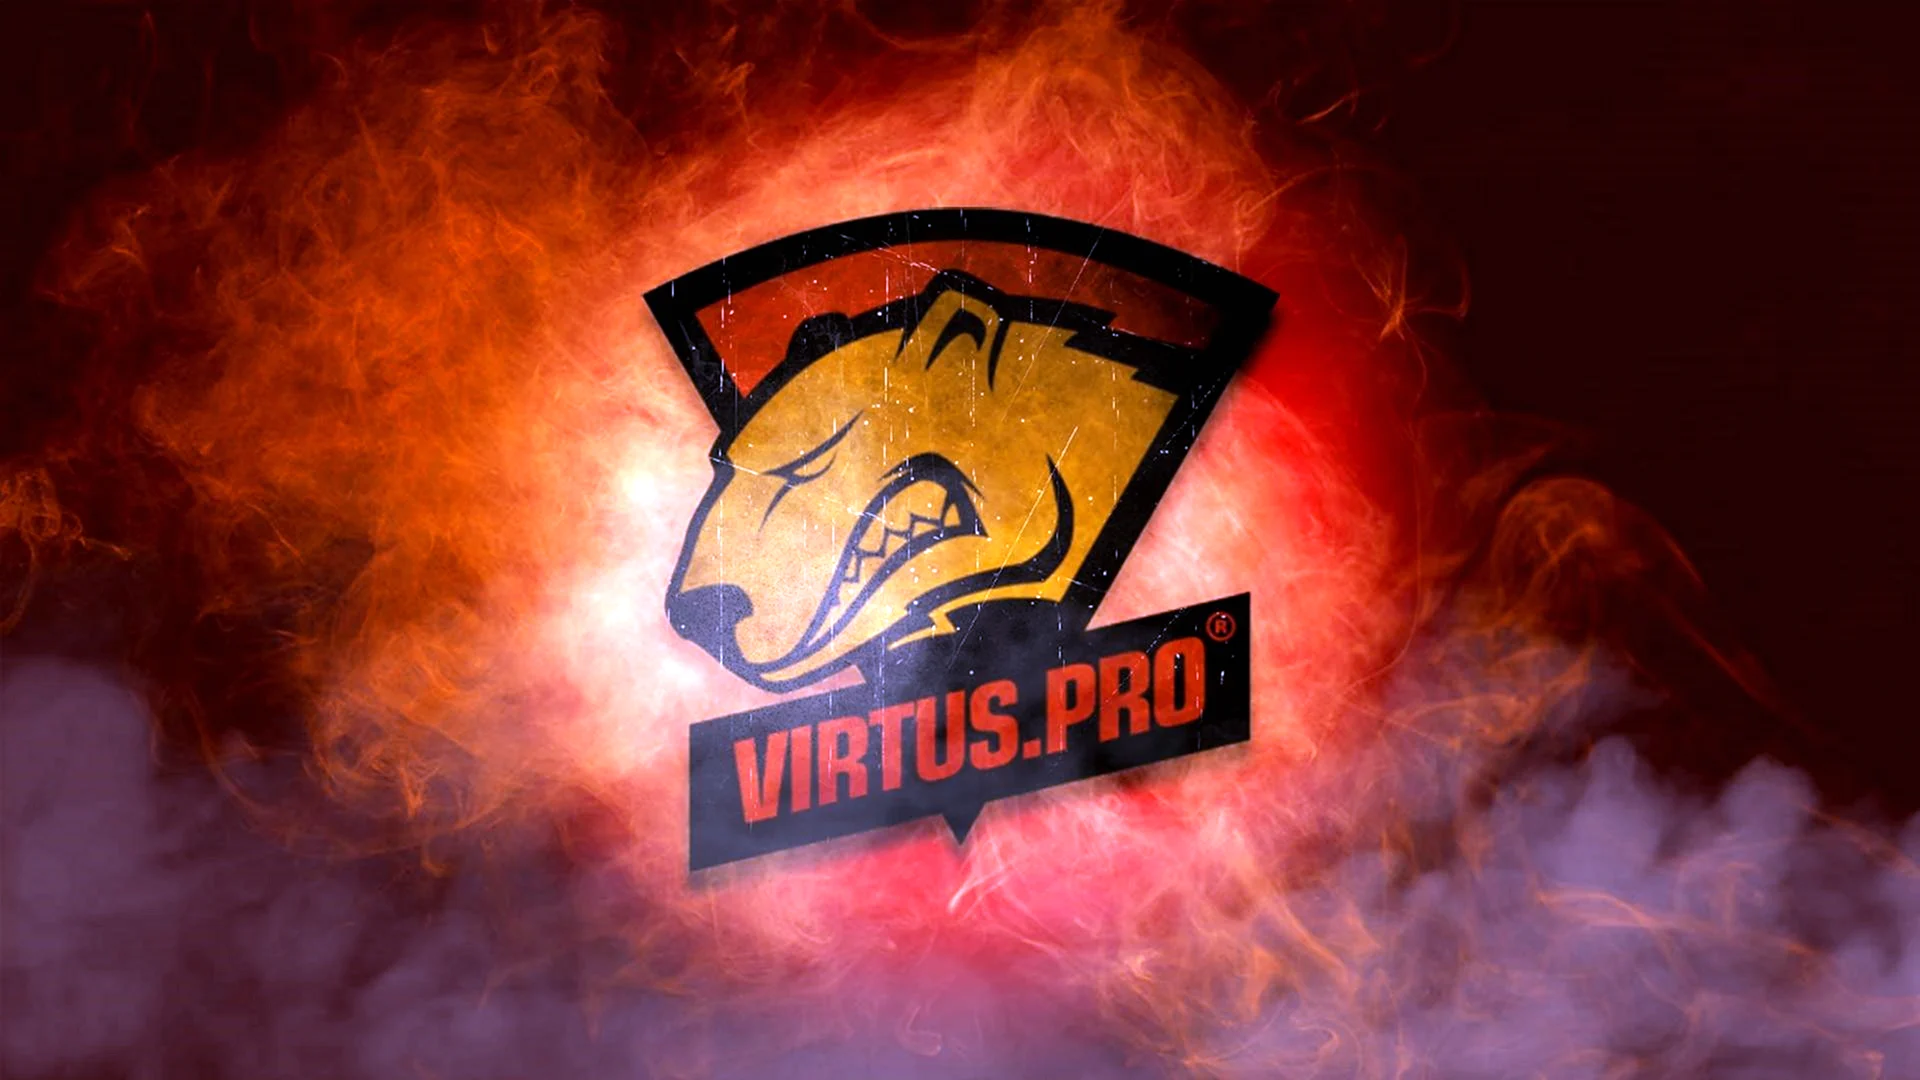 КС го Virtus Pro